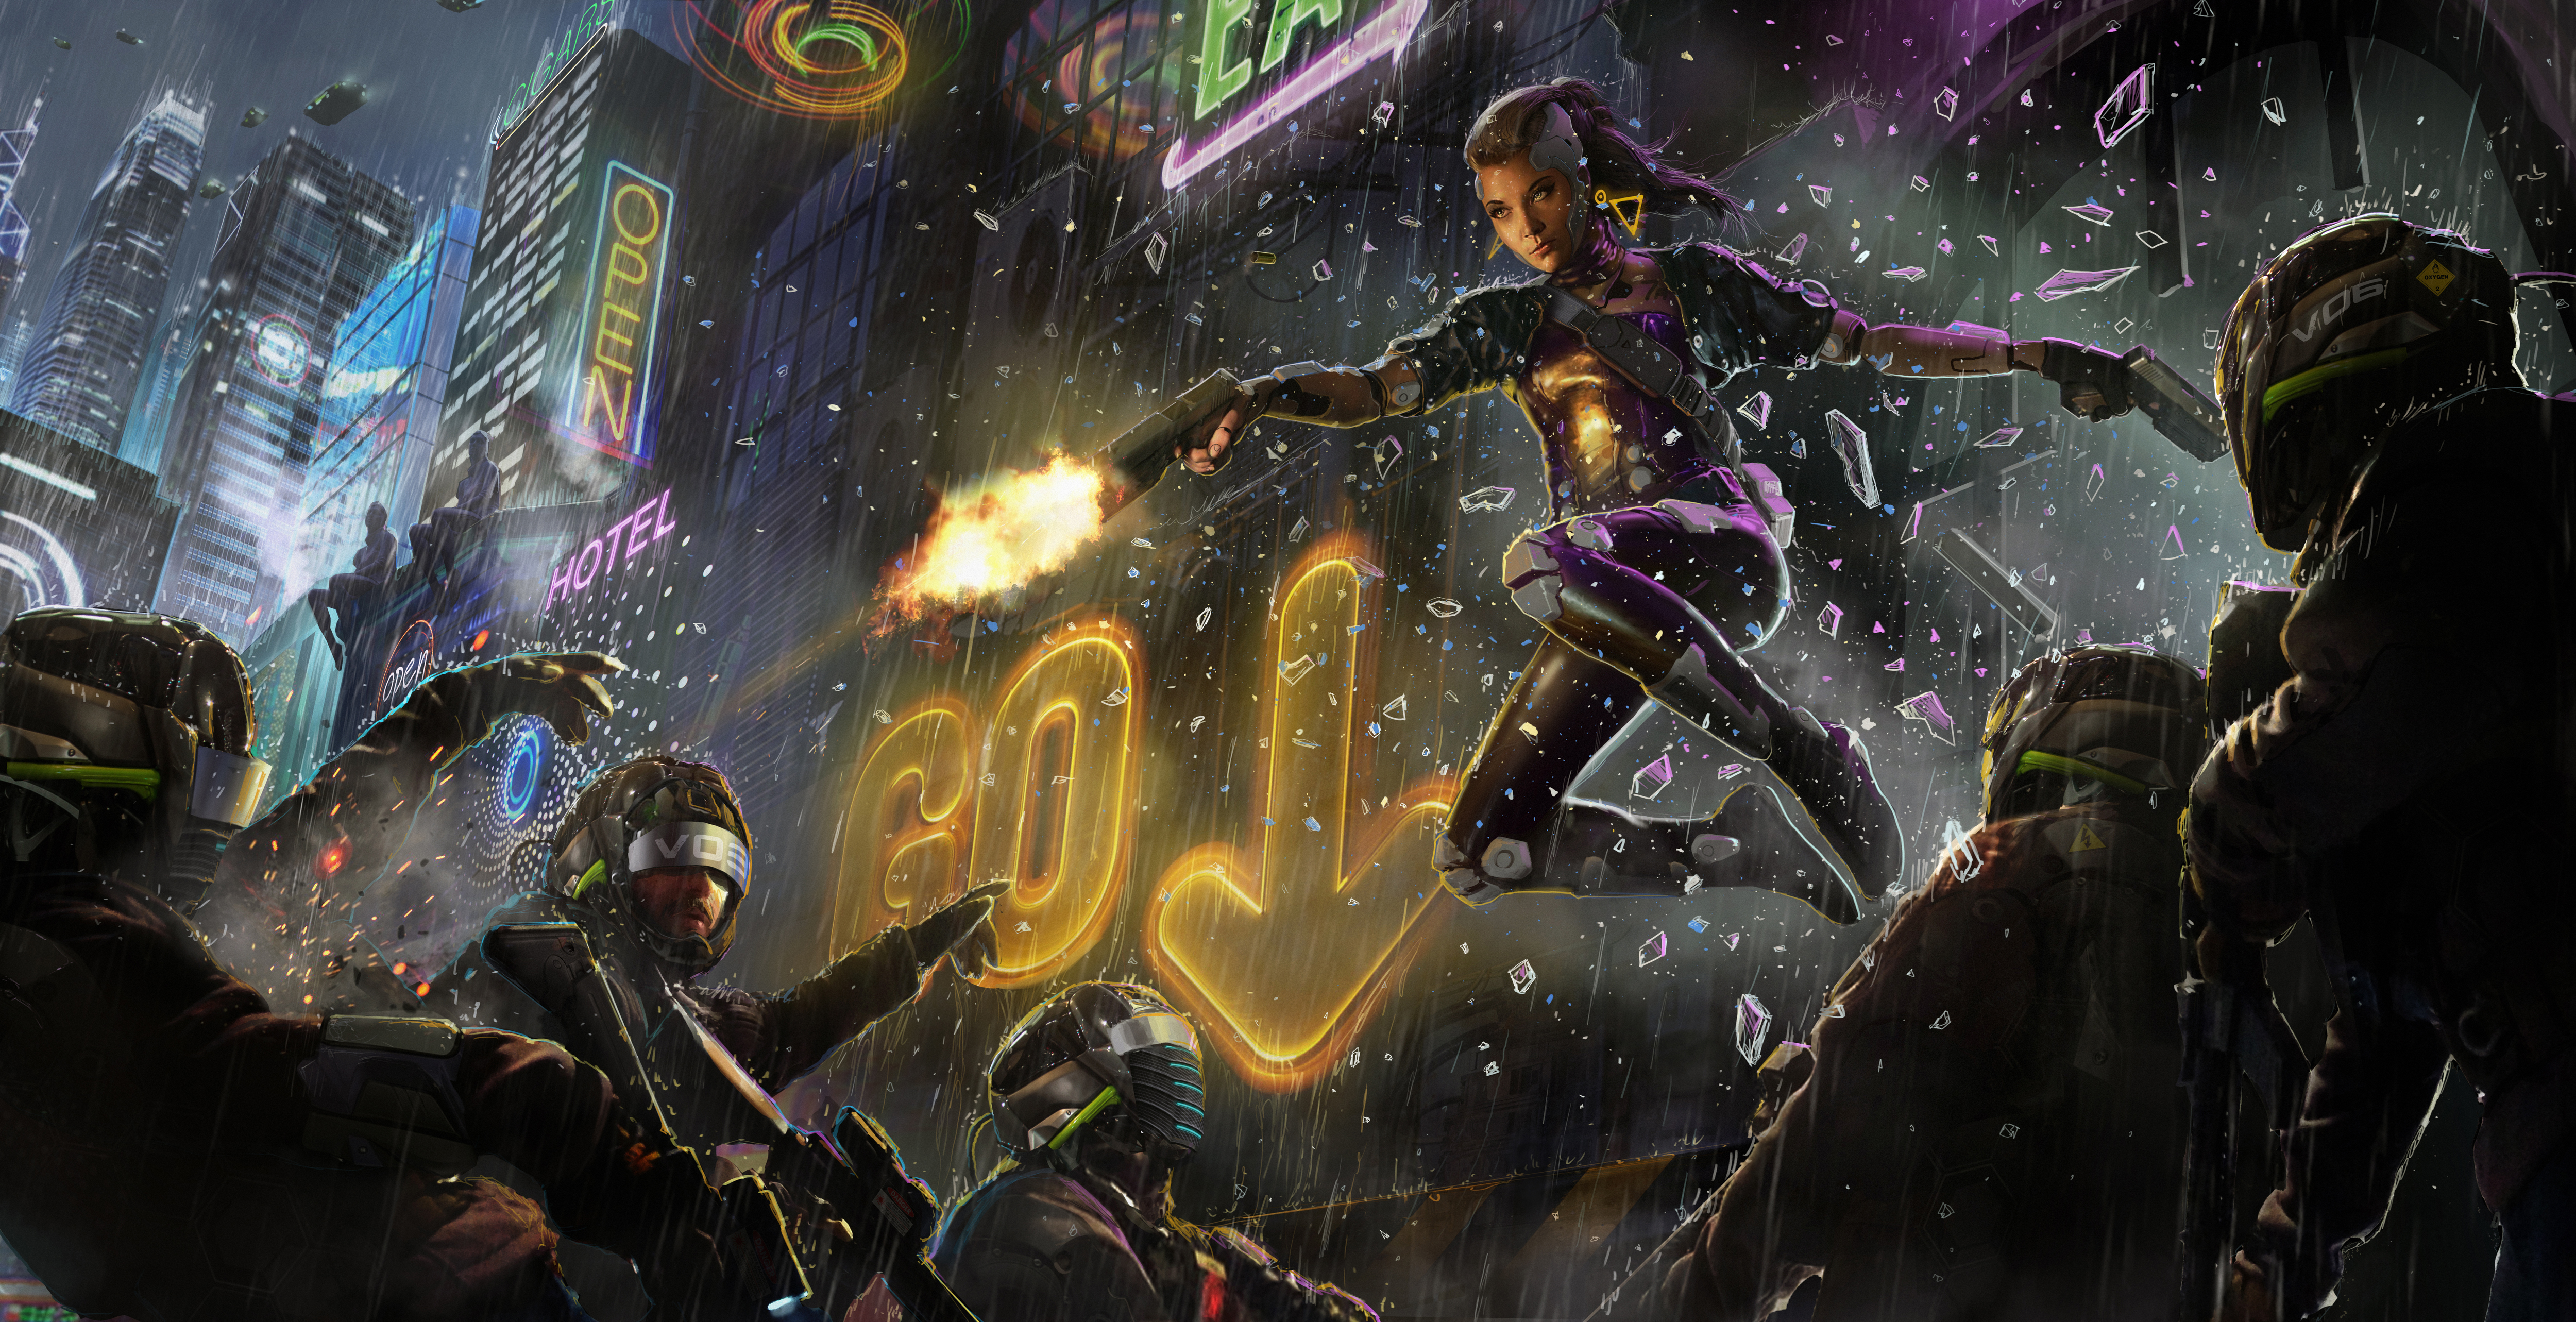 Ultrawide Cyberpunk Wallpaper Sci-fi Fantasy (Instant Download) 